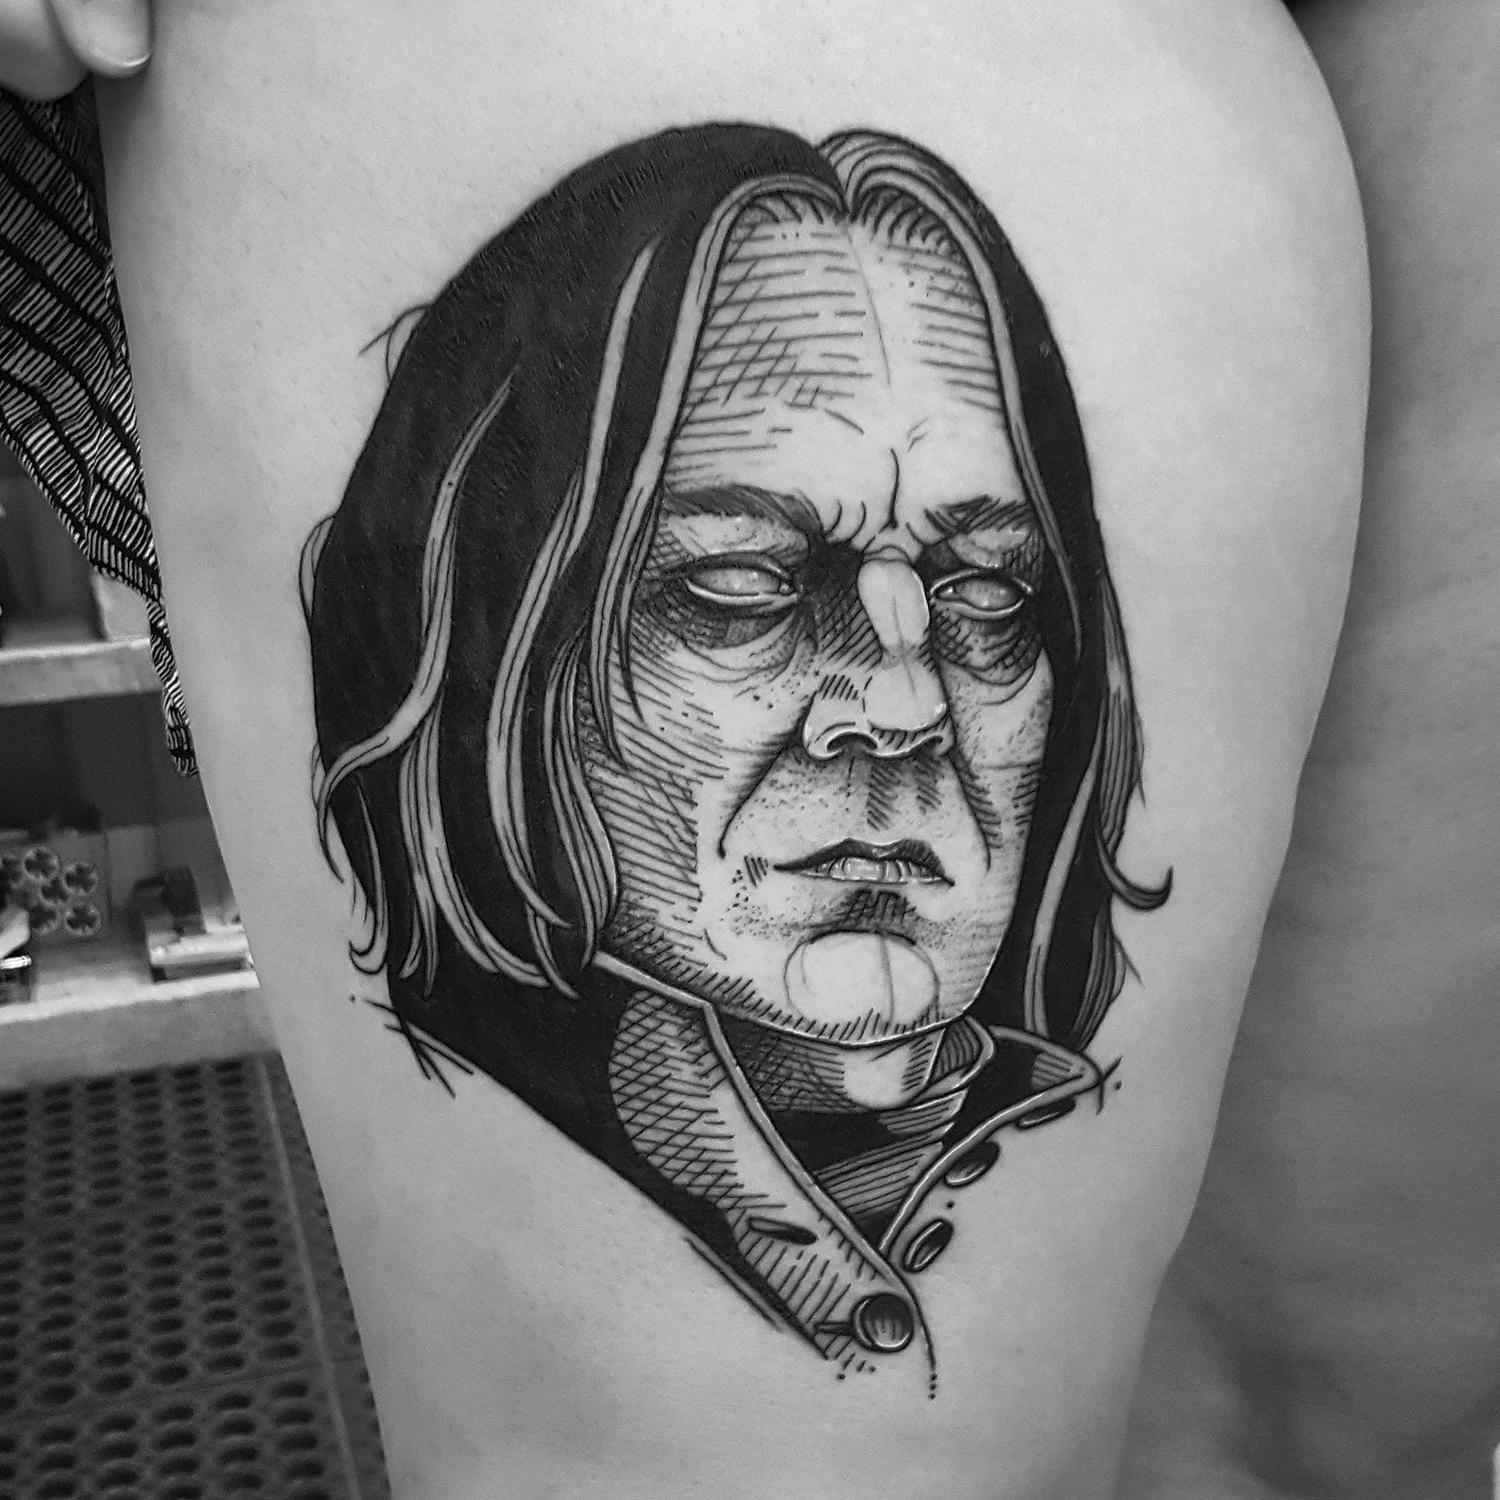 Lord Voldemort tattoo